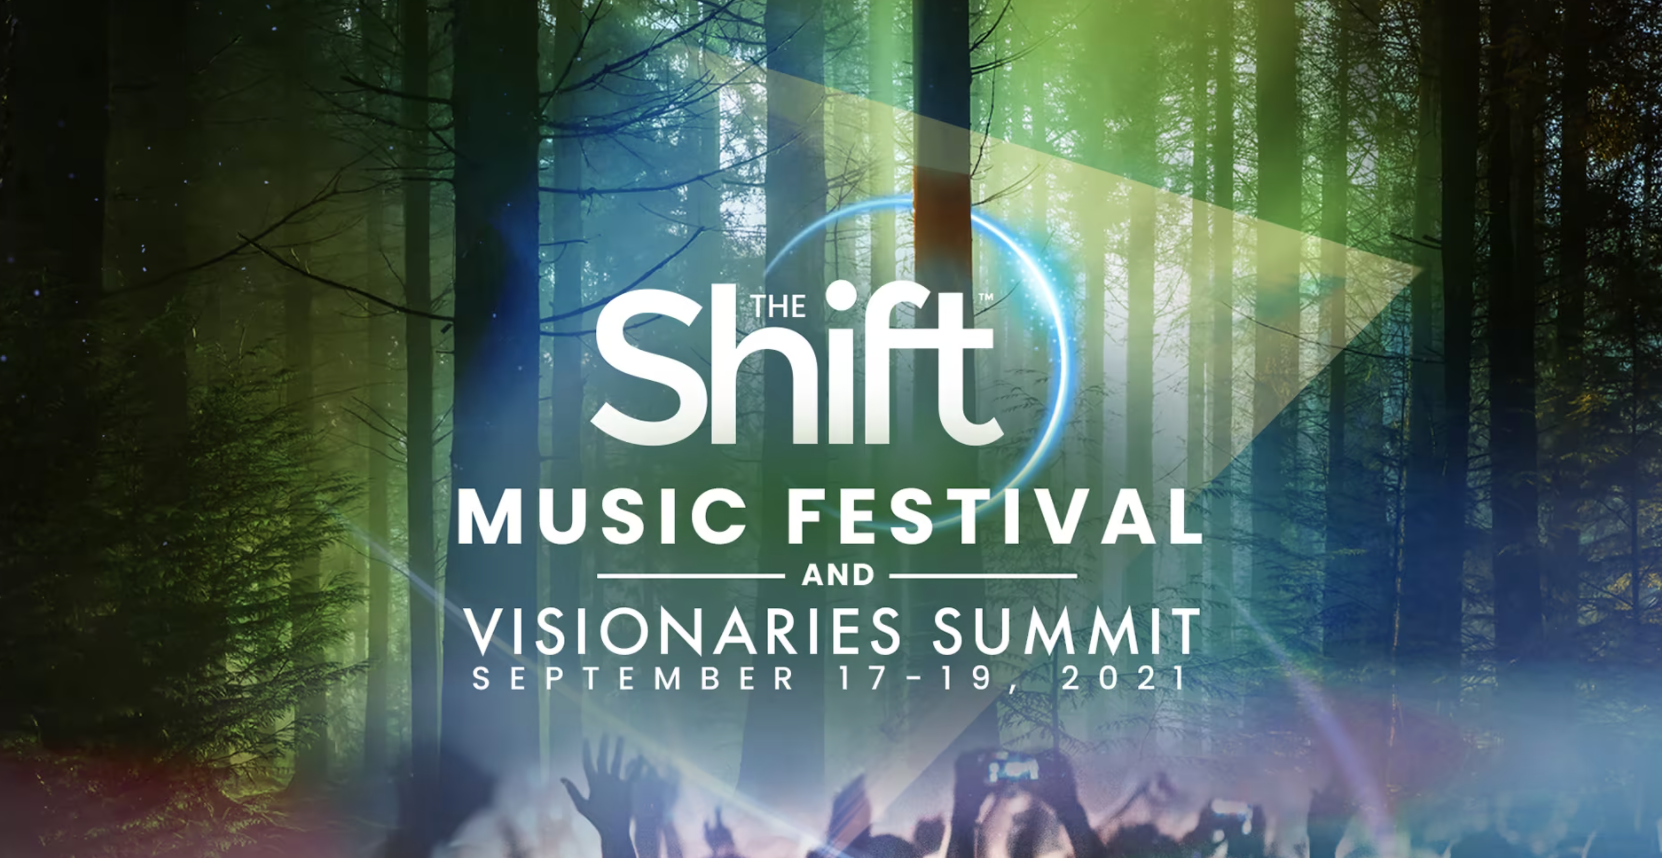 The Shift Music Festival, The Shift Music Festival online, The Shift Music Festival tickets, The Shift Music Festival schedule, The Shift Music Festival music, The Shift Music Festival link, The Shift Music Festival online event